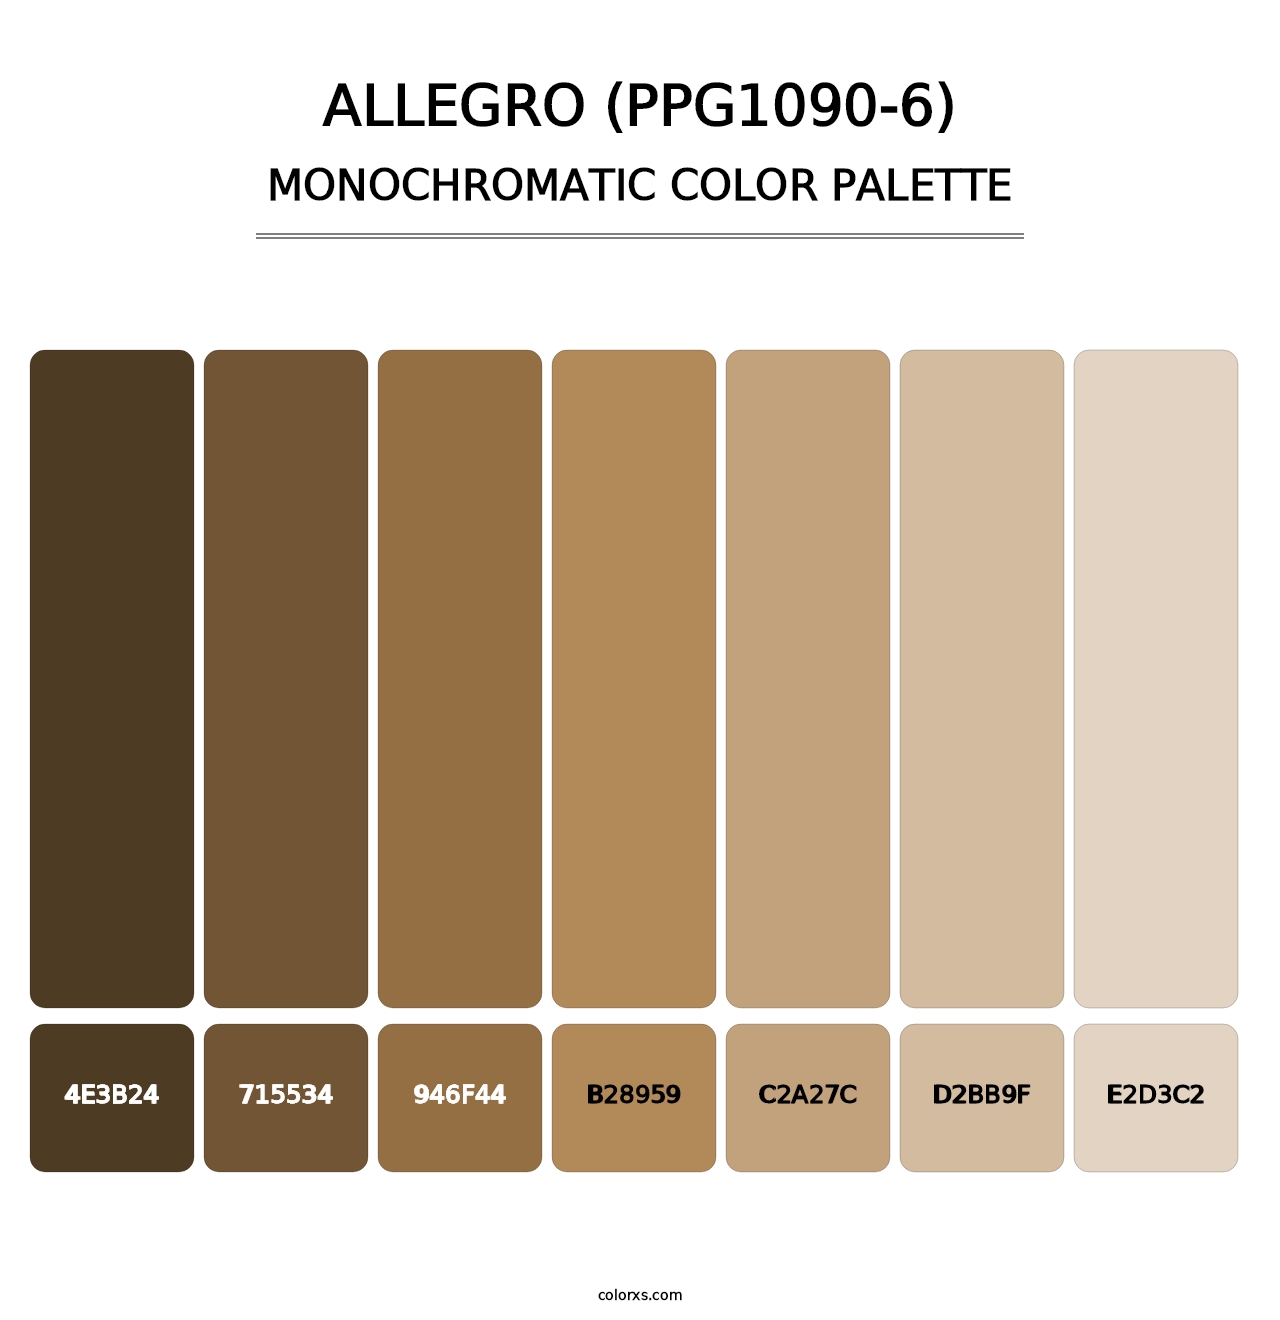 Allegro (PPG1090-6) - Monochromatic Color Palette